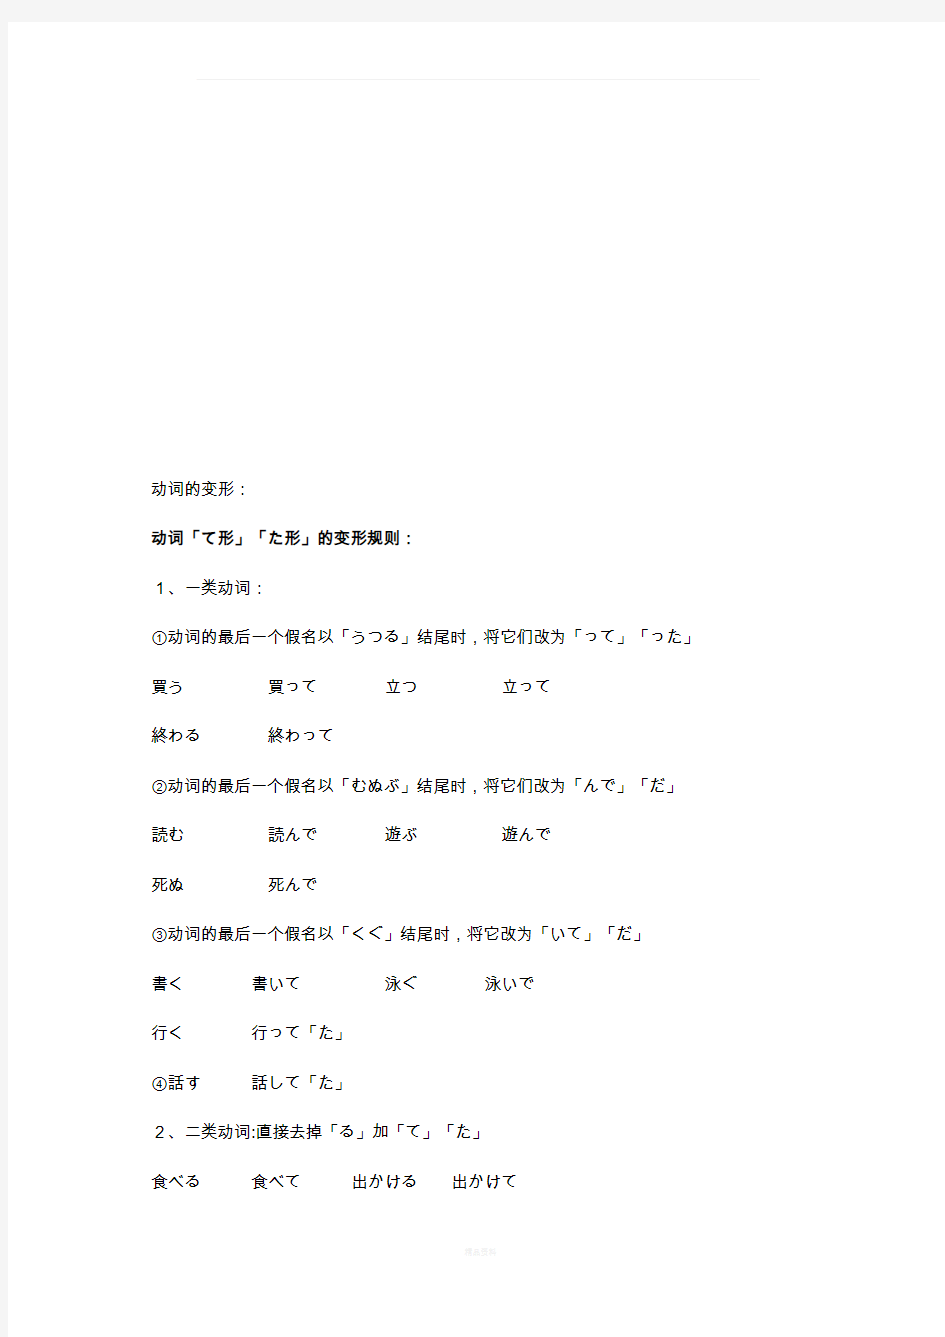 新版标准日本语初级上册语法总结(简要版)